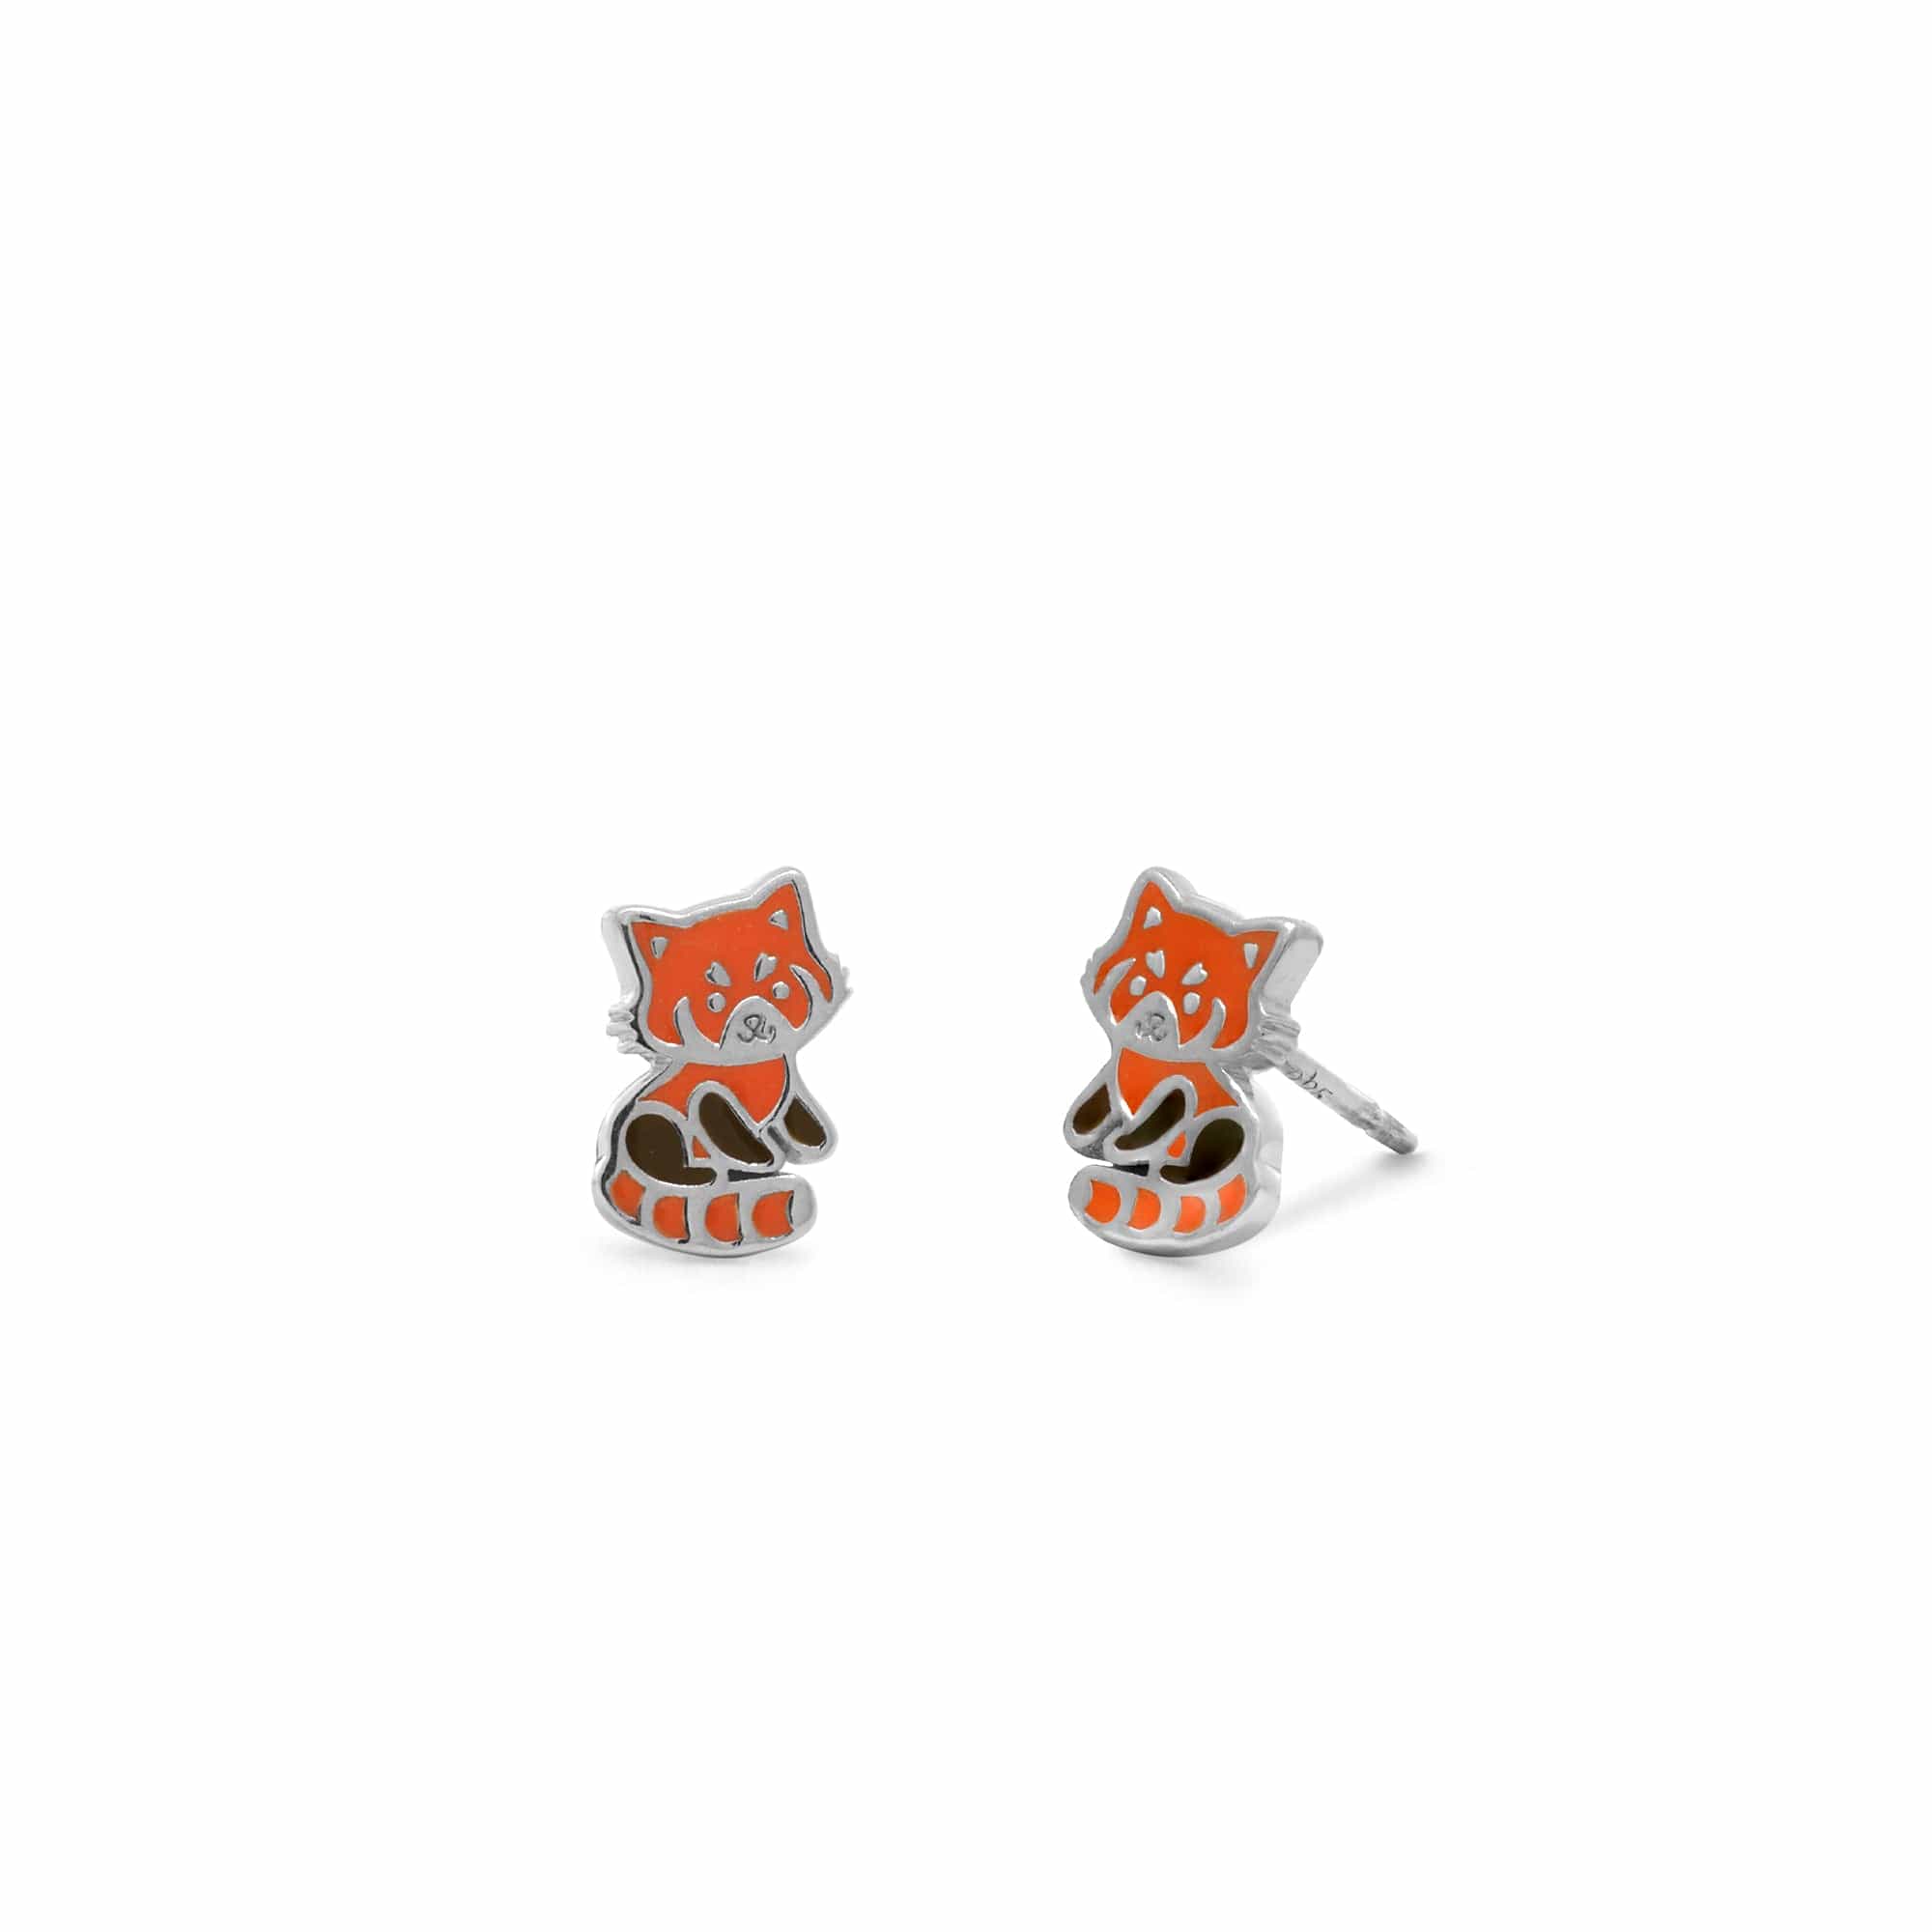 Boma Jewelry Earrings Red Panda Stud Earrings